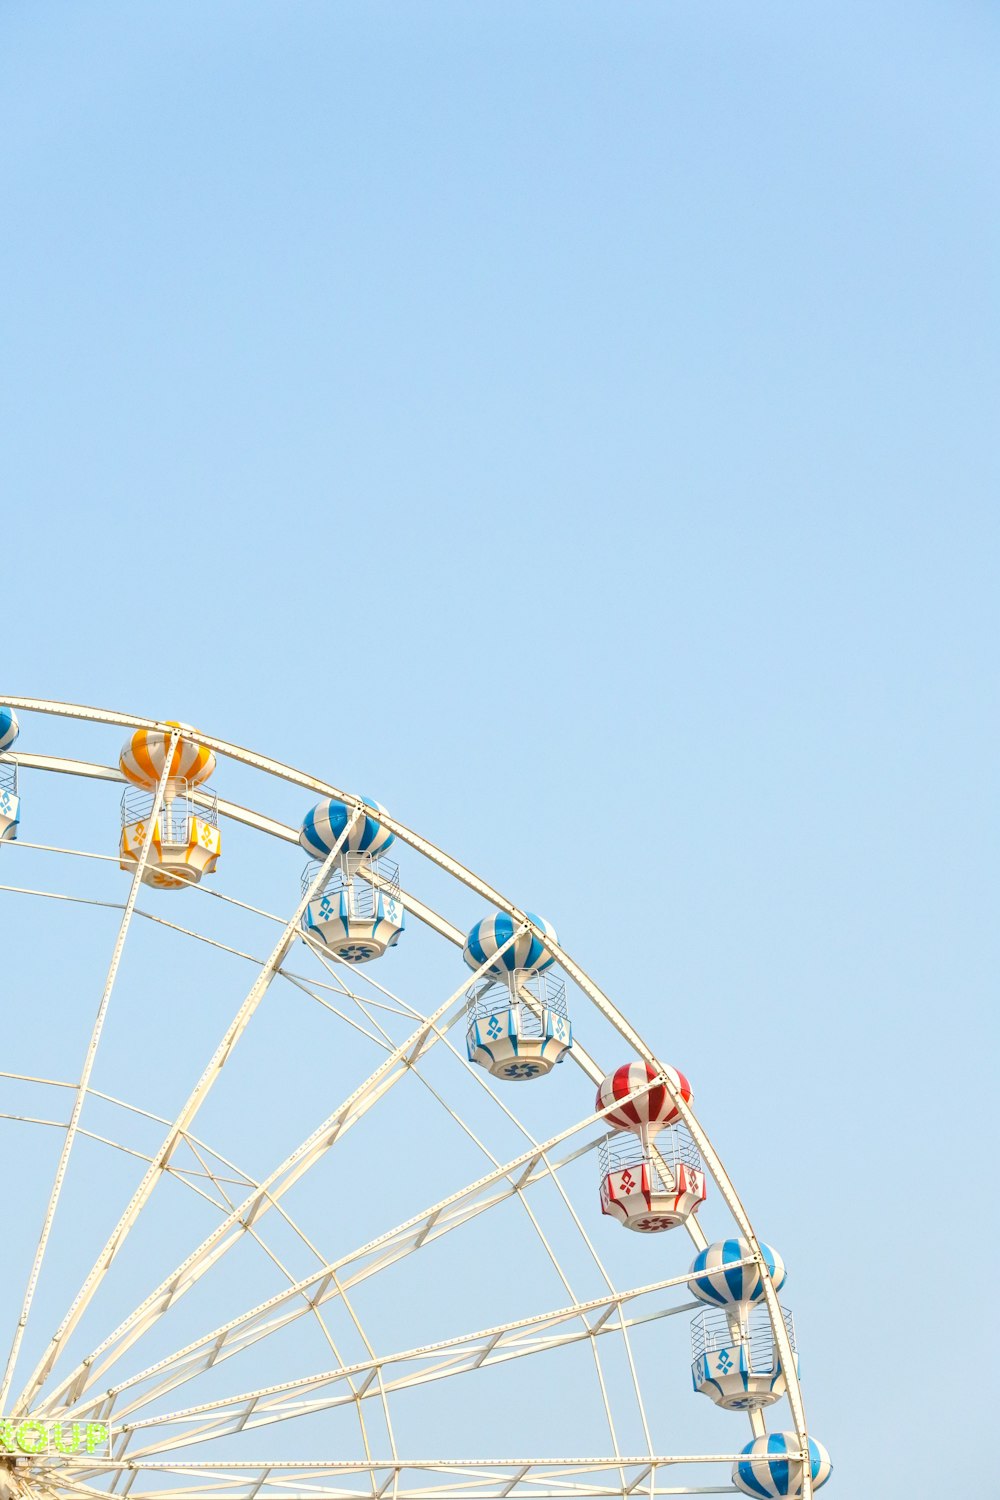 Blick aus der Wurmperspektive auf das Riesenrad unter strahlend blauem Himmel